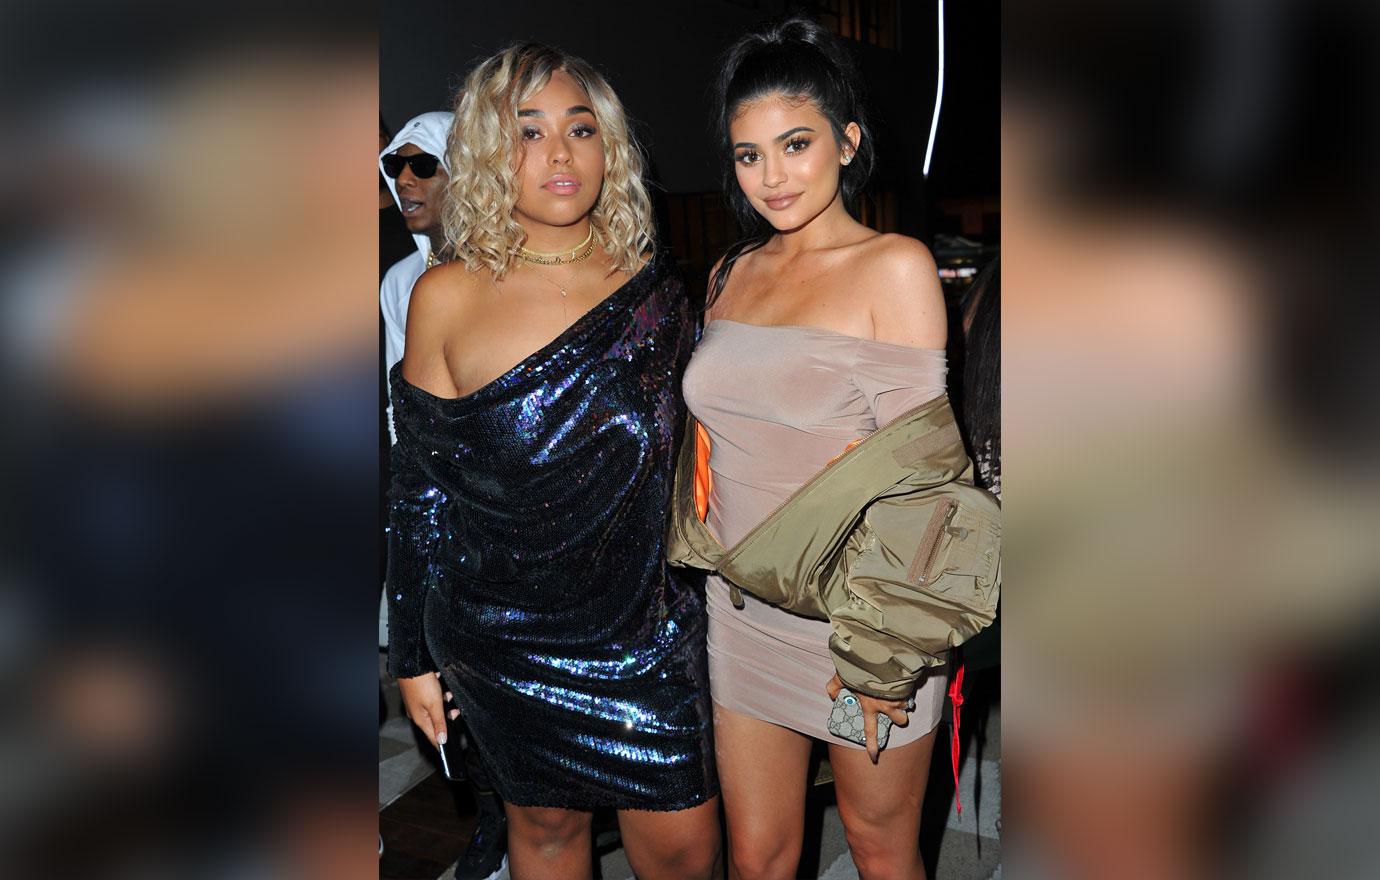 Kylie Jenner won't trash talk about former friend Jordyn Woods